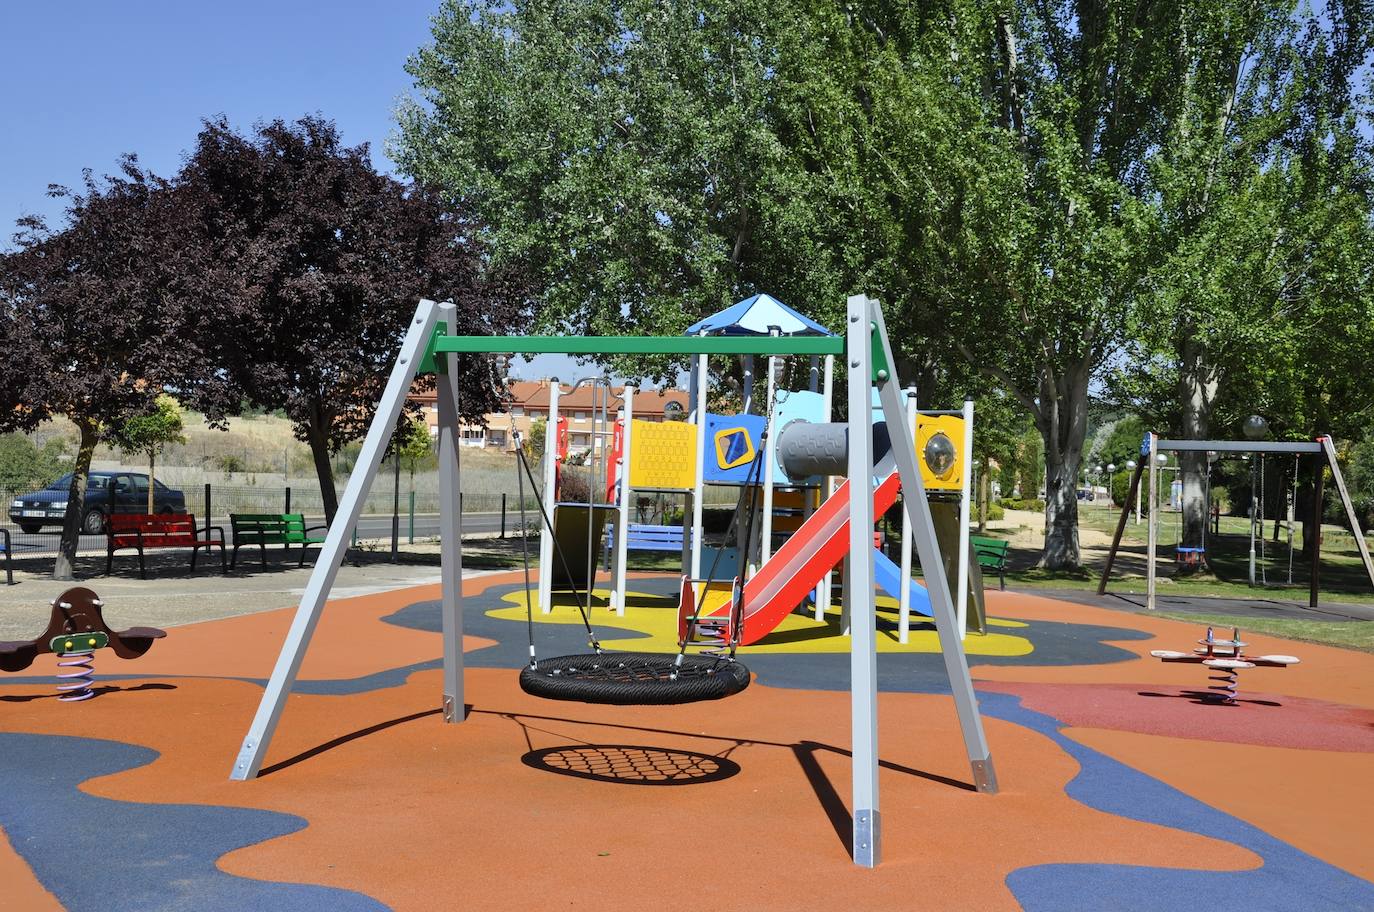 Remodelado integralmente el parque infantil Vallezate – Ayuntamiento de  Valencia de Don Juan